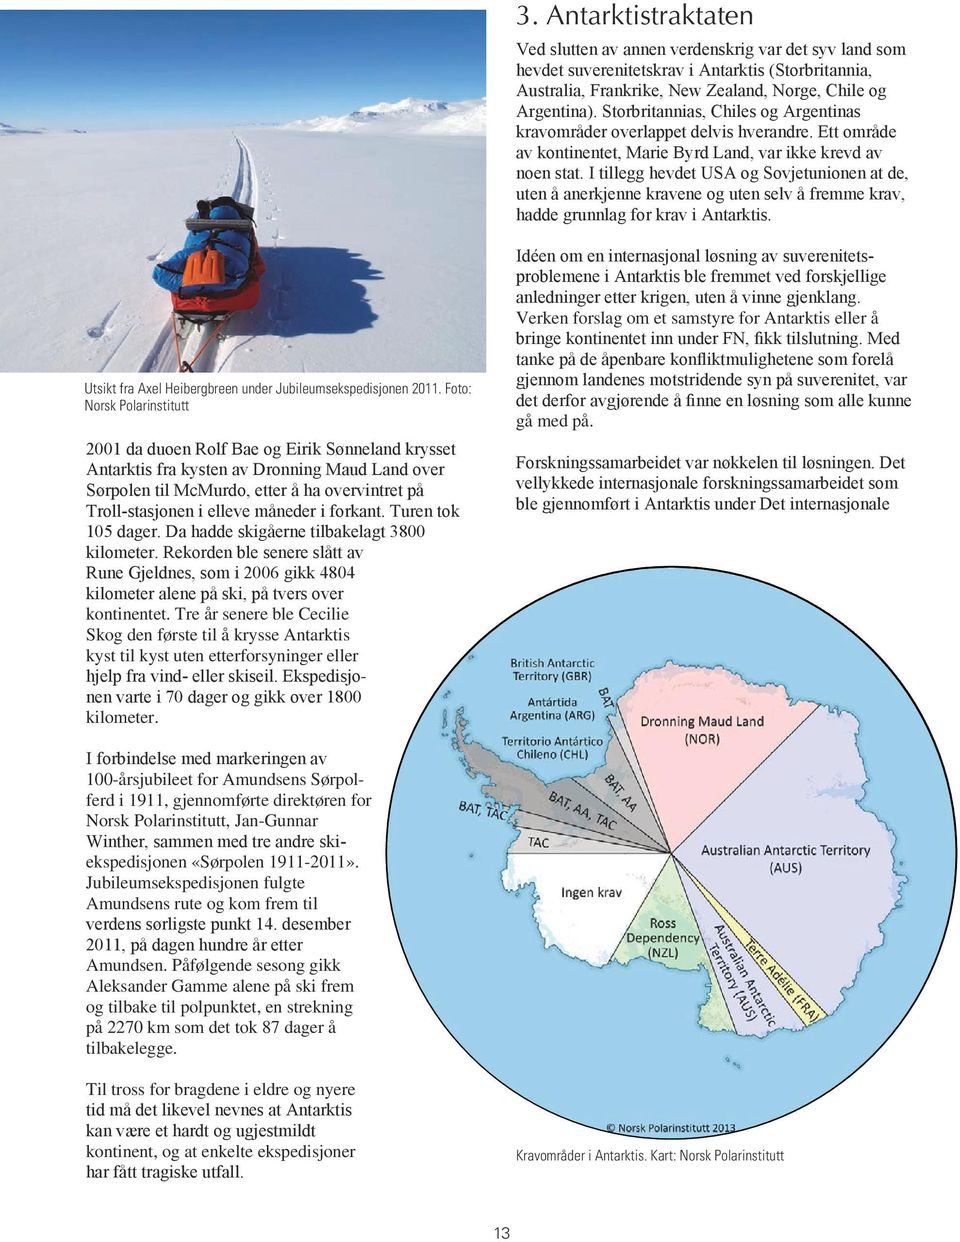 I tillegg hevdet USA og Sovjetunionen at de, uten å anerkjenne kravene og uten selv å fremme krav, hadde grunnlag for krav i Antarktis. Utsikt fra Axel Heibergbreen under Jubileumsekspedisjonen 2011.